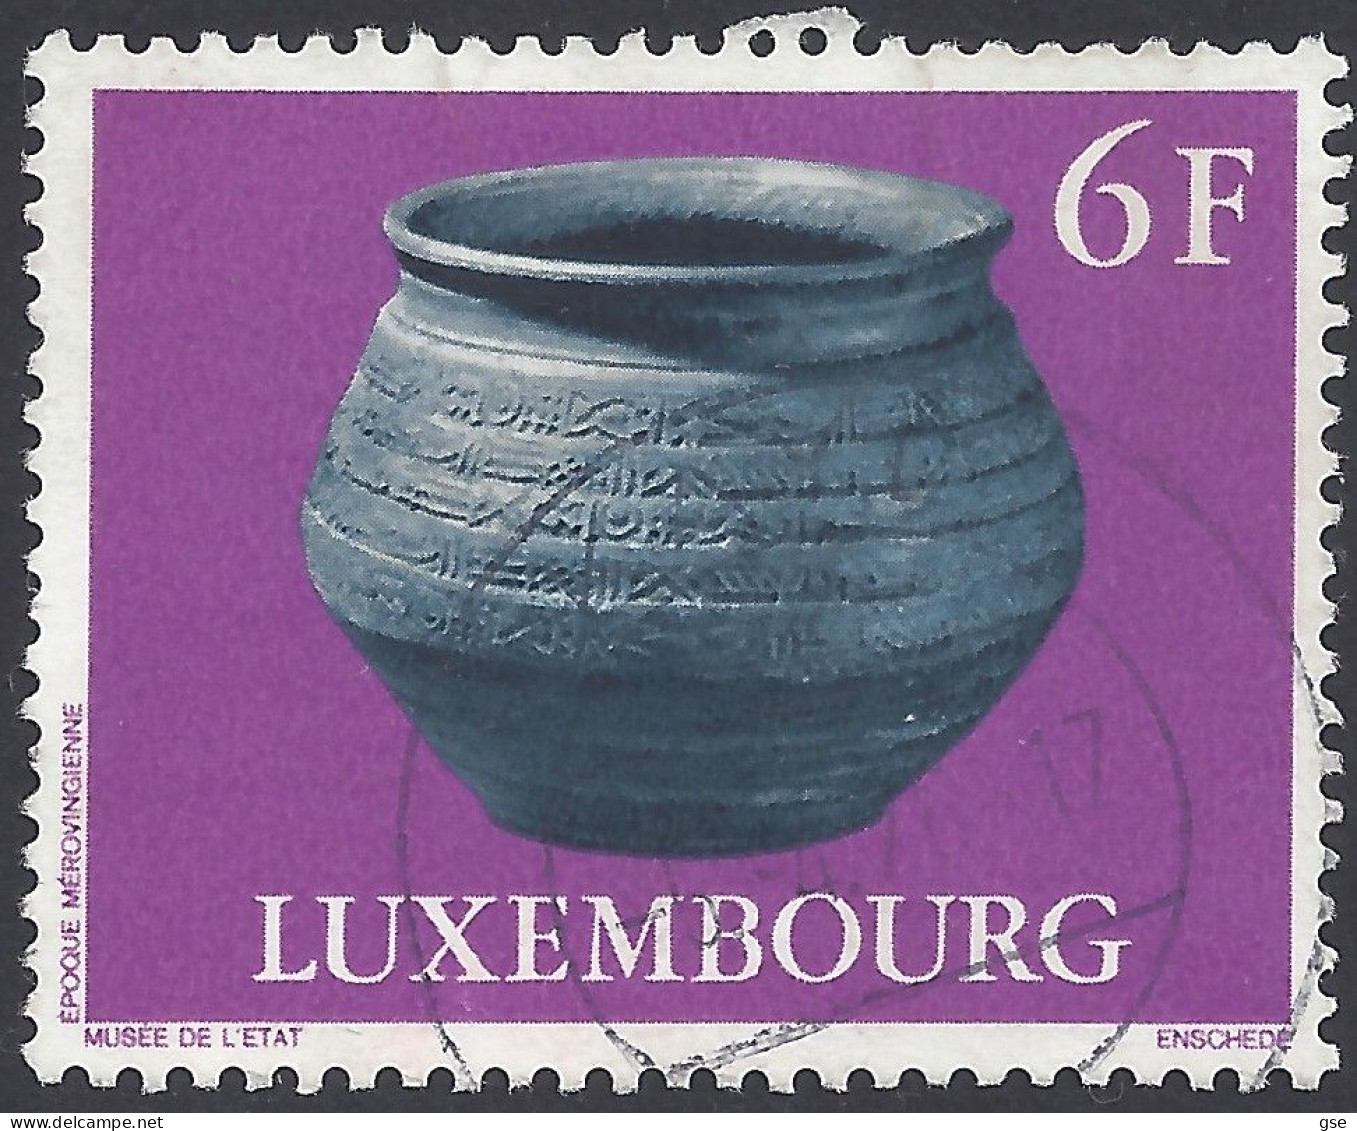 LUSSEMBURGO 1976 - Yvert 876° - Ceramica | - Used Stamps